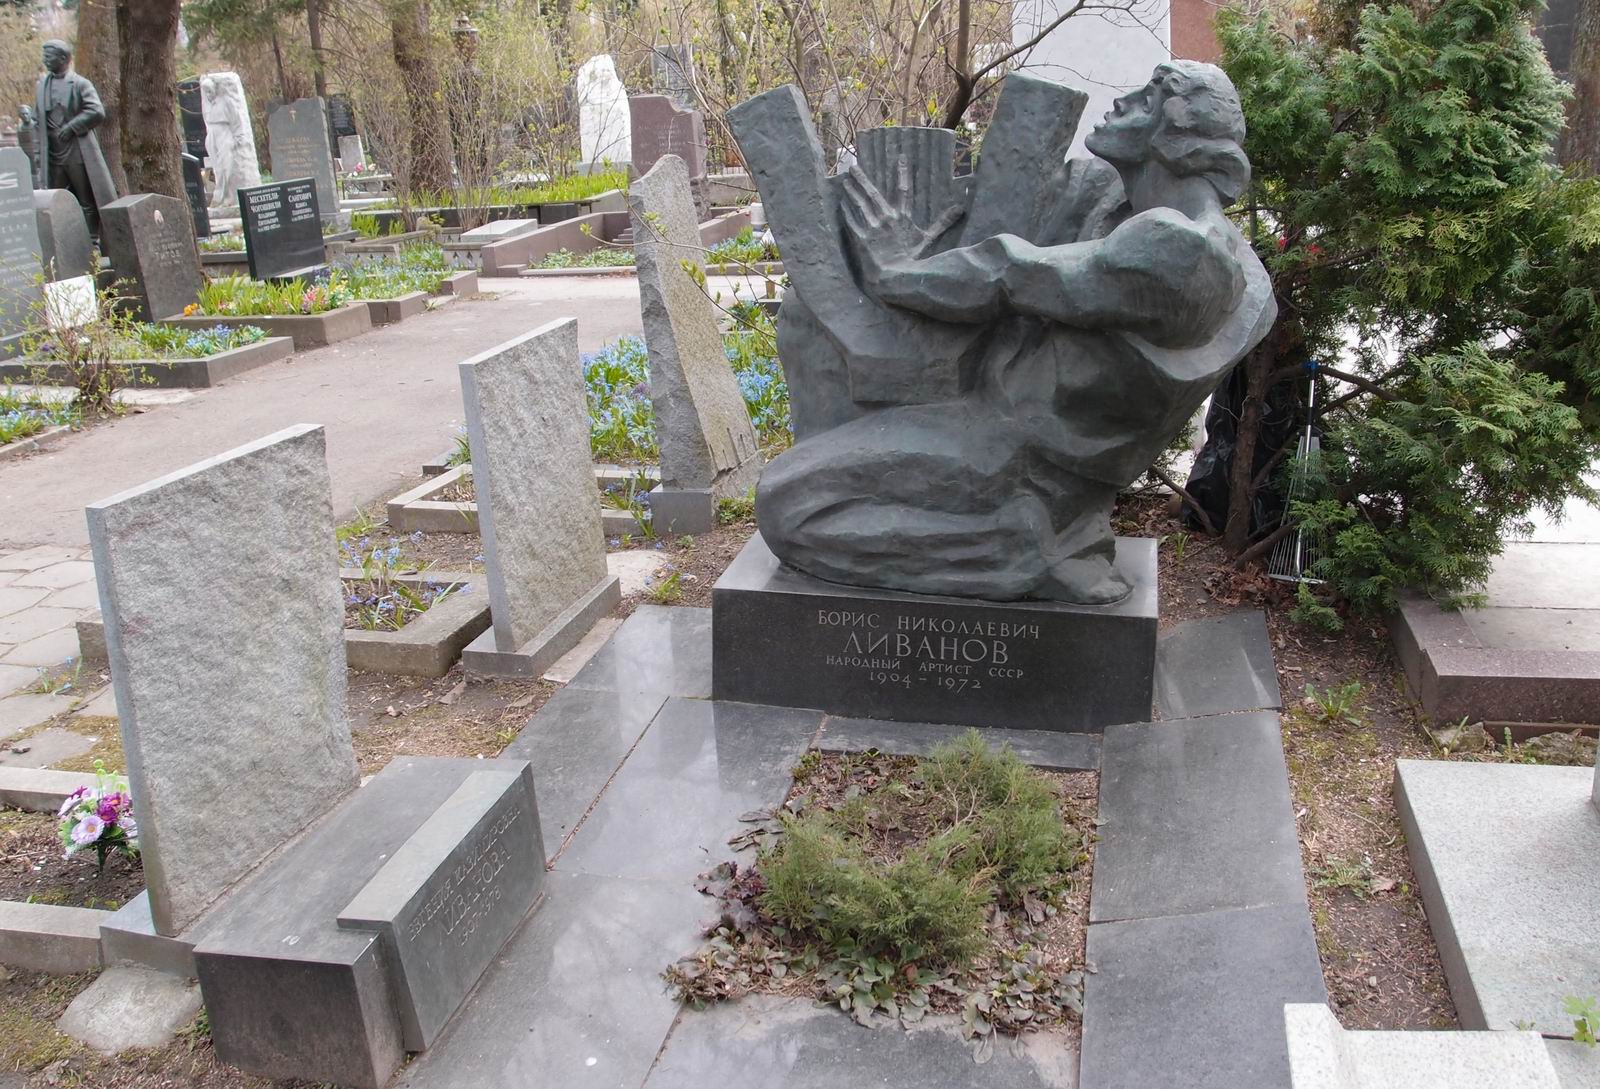 Памятник на могиле Ливанова Б.Н. (1904-1972), ск. И.Васильев, арх. Ю.Воскресенский, на Новодевичьем кладбище (2-17а-5).